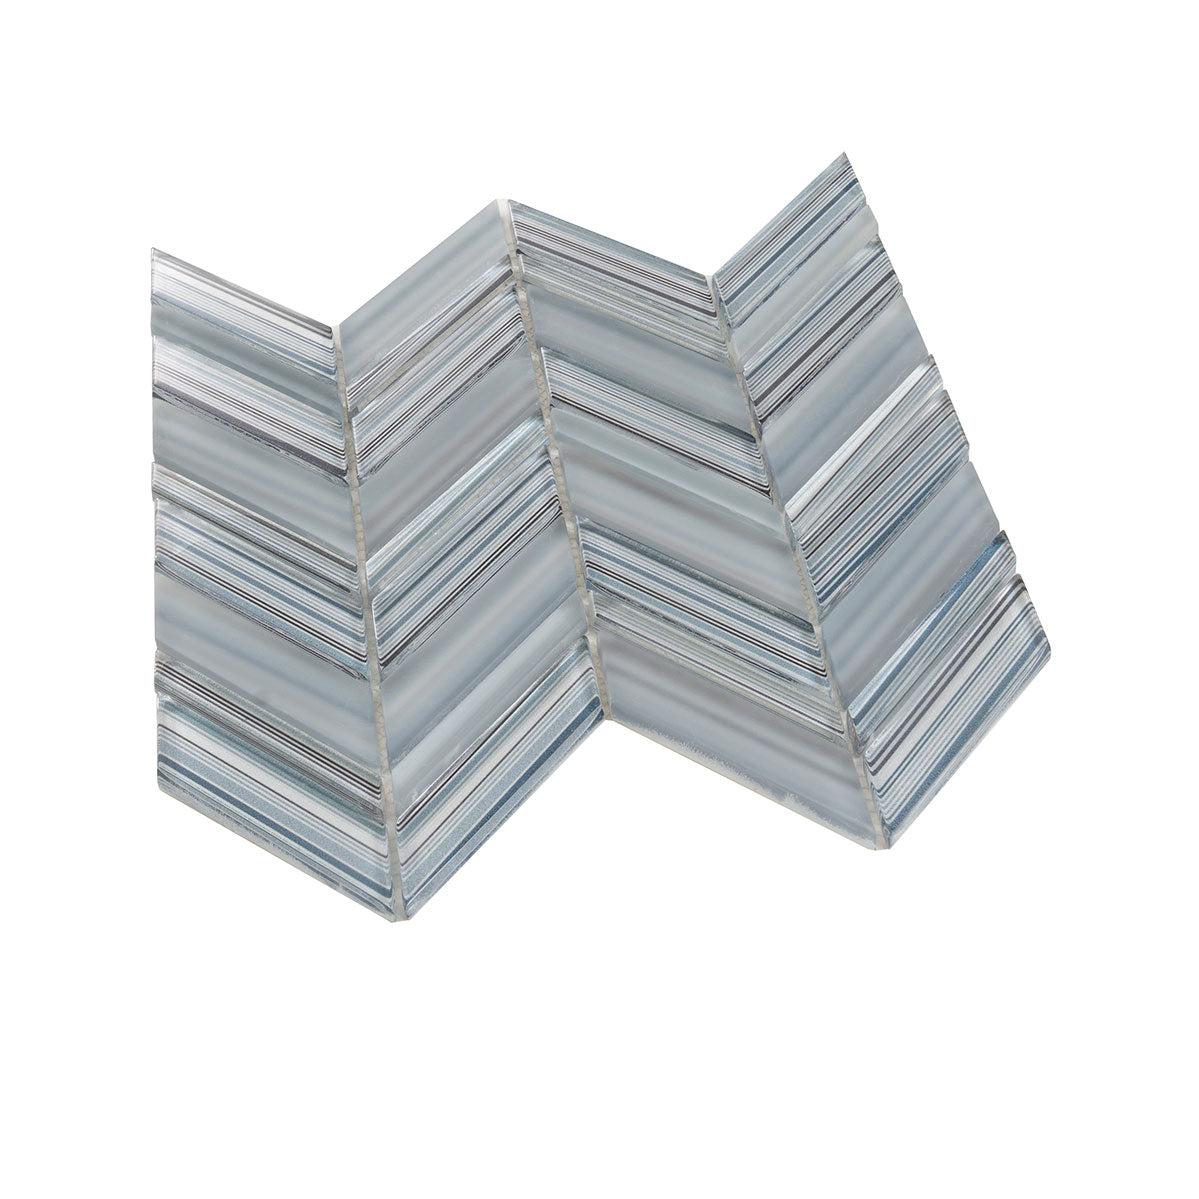 Fabrique Blue Grey Chevron Glass Mosaic Tile